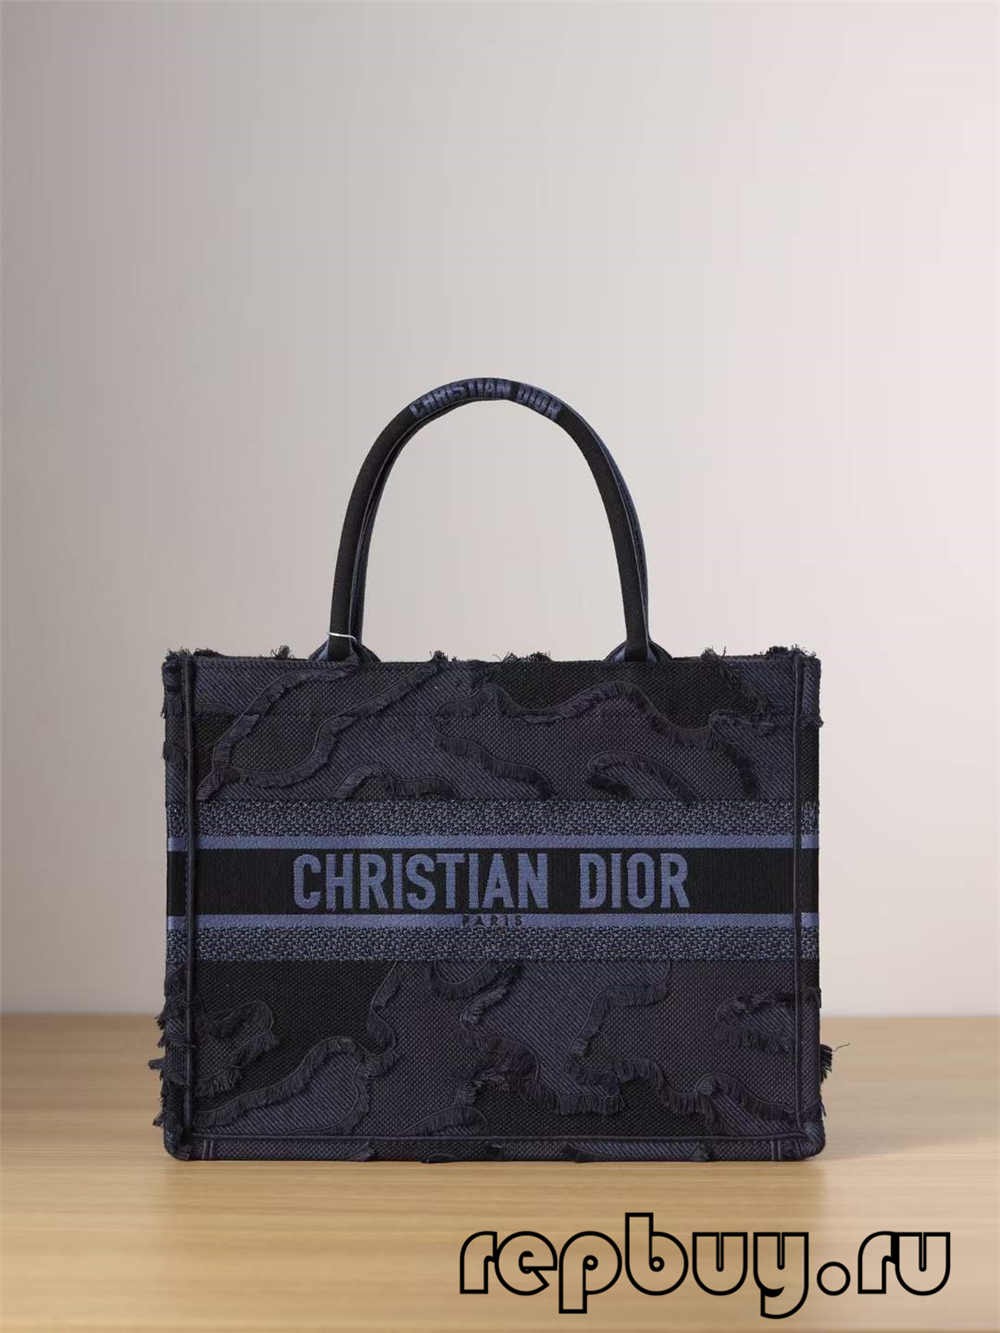 Najboljša replika vrečk Dior Book Tote: vezenine z modrimi resicami (Najnovejše 2022)-Best Quality Fake Louis Vuitton Bag Online Store, Replica designer bag ru